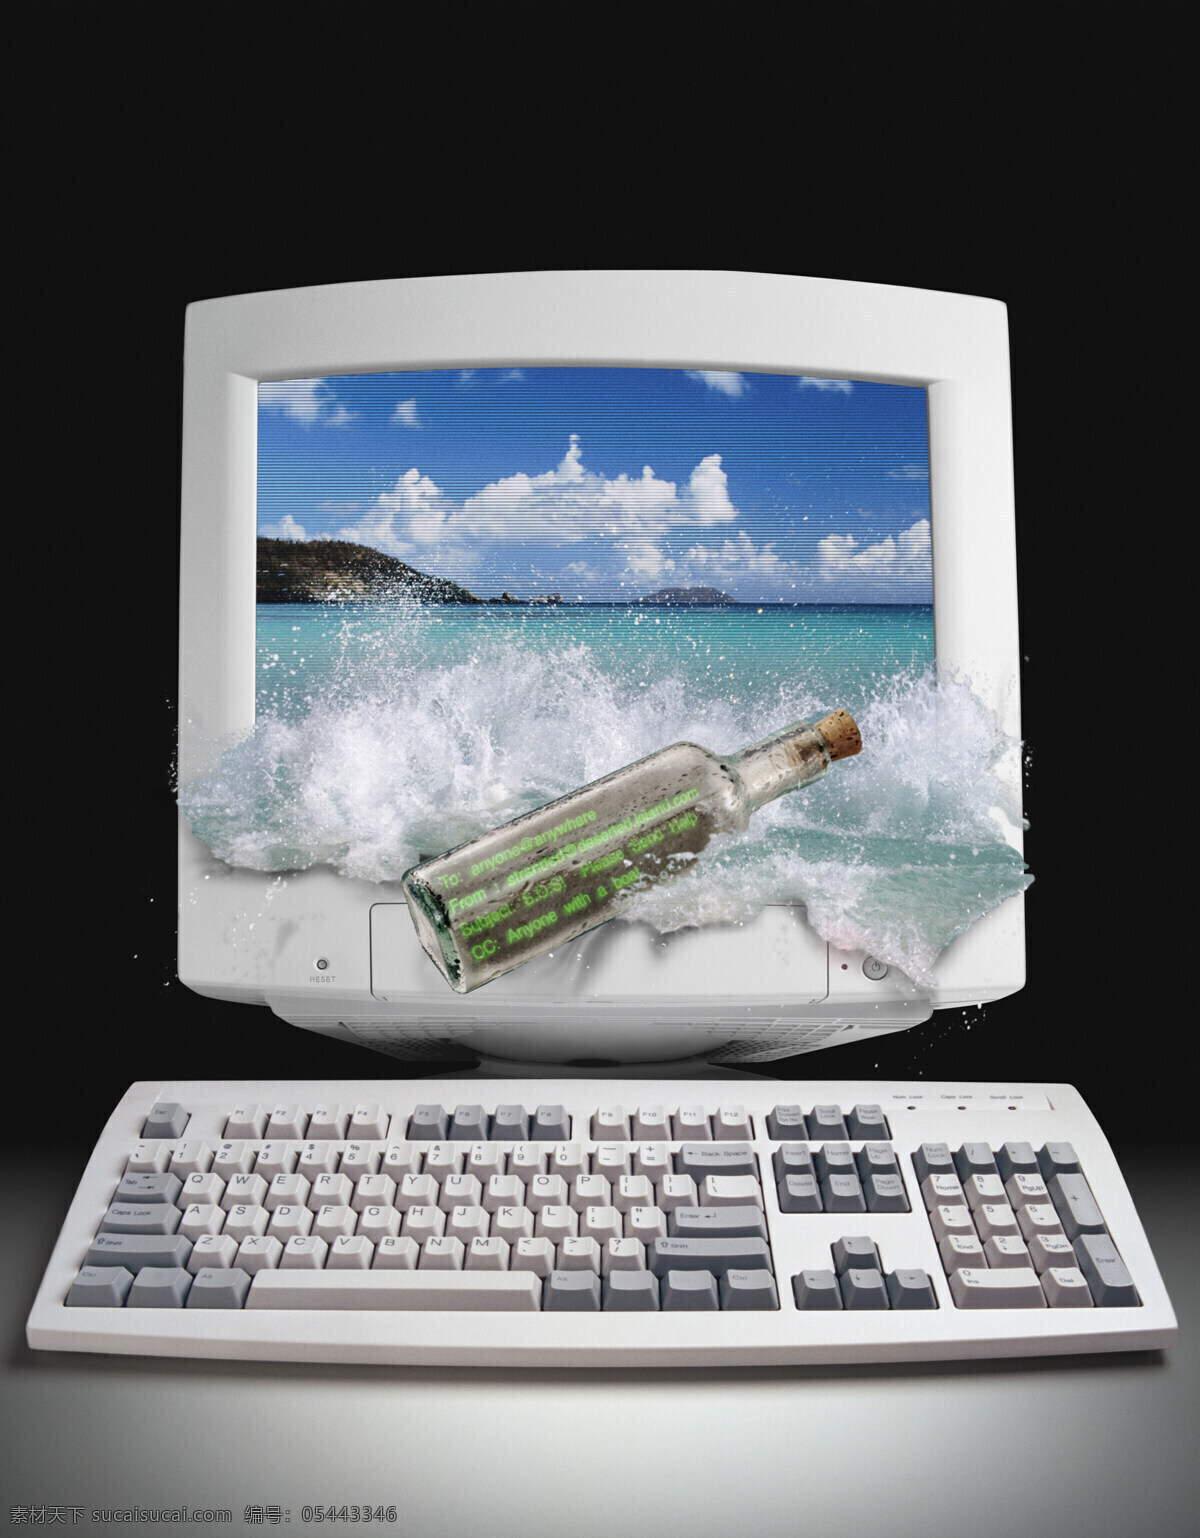 创意 电脑创意 电脑网络 键盘 浪花 漂流瓶 生活百科 电脑 创意设计 模板下载 台式电脑 水 显示器 internet 因特网 psd源文件